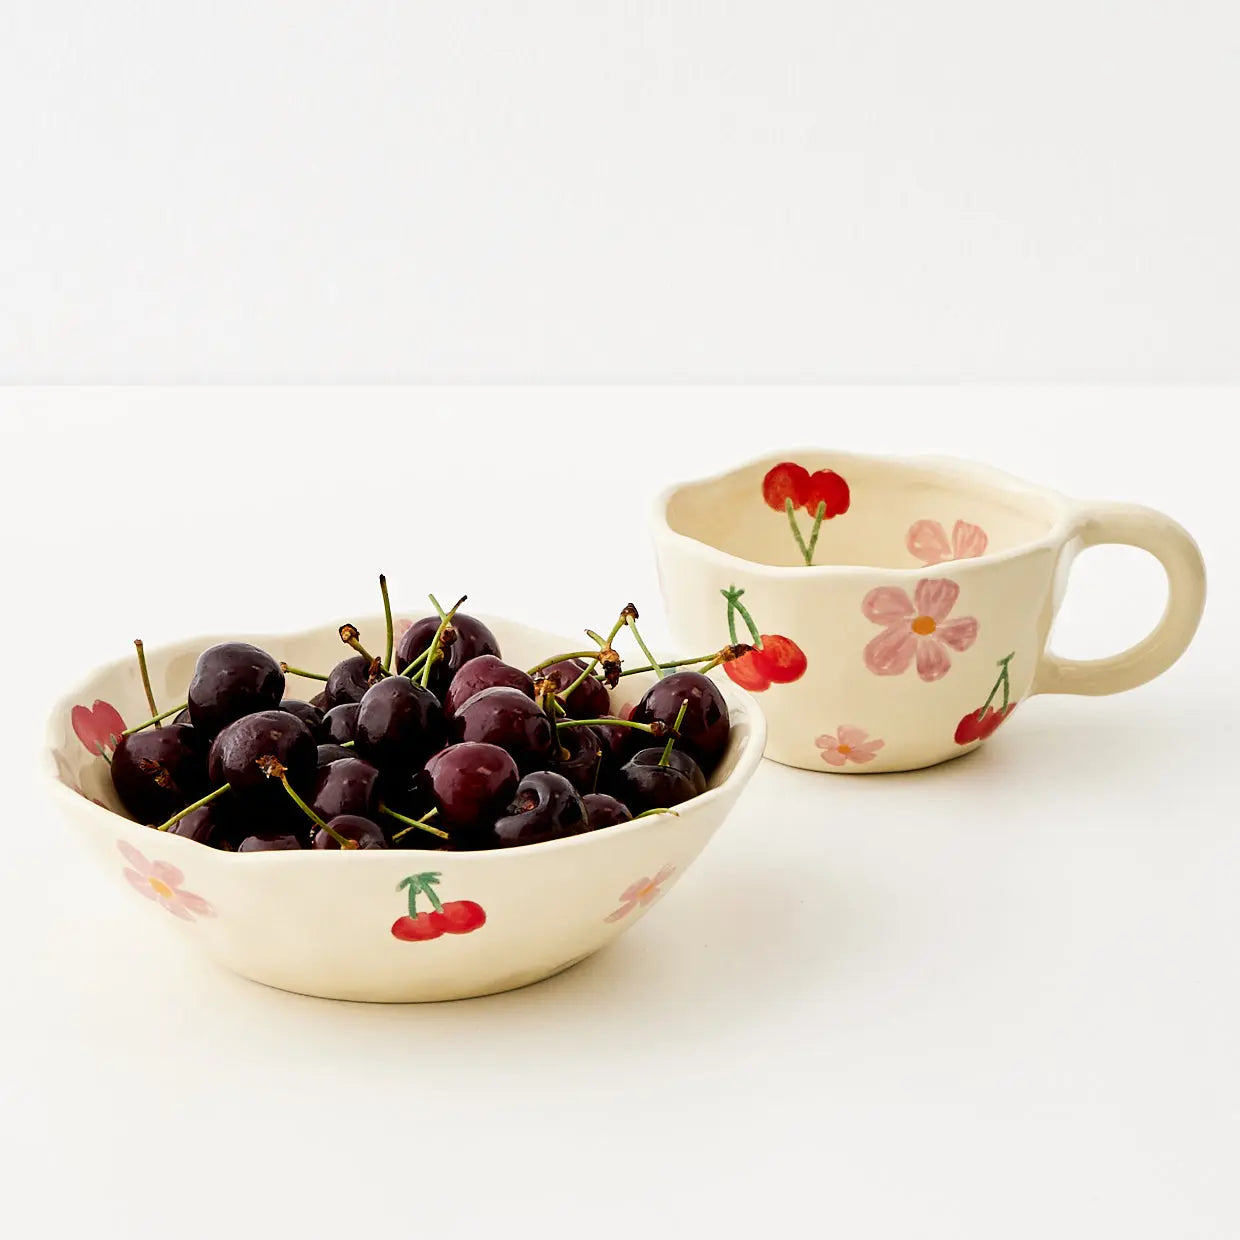 Painted Cherry Ceramic Mug Red - GigiandTom